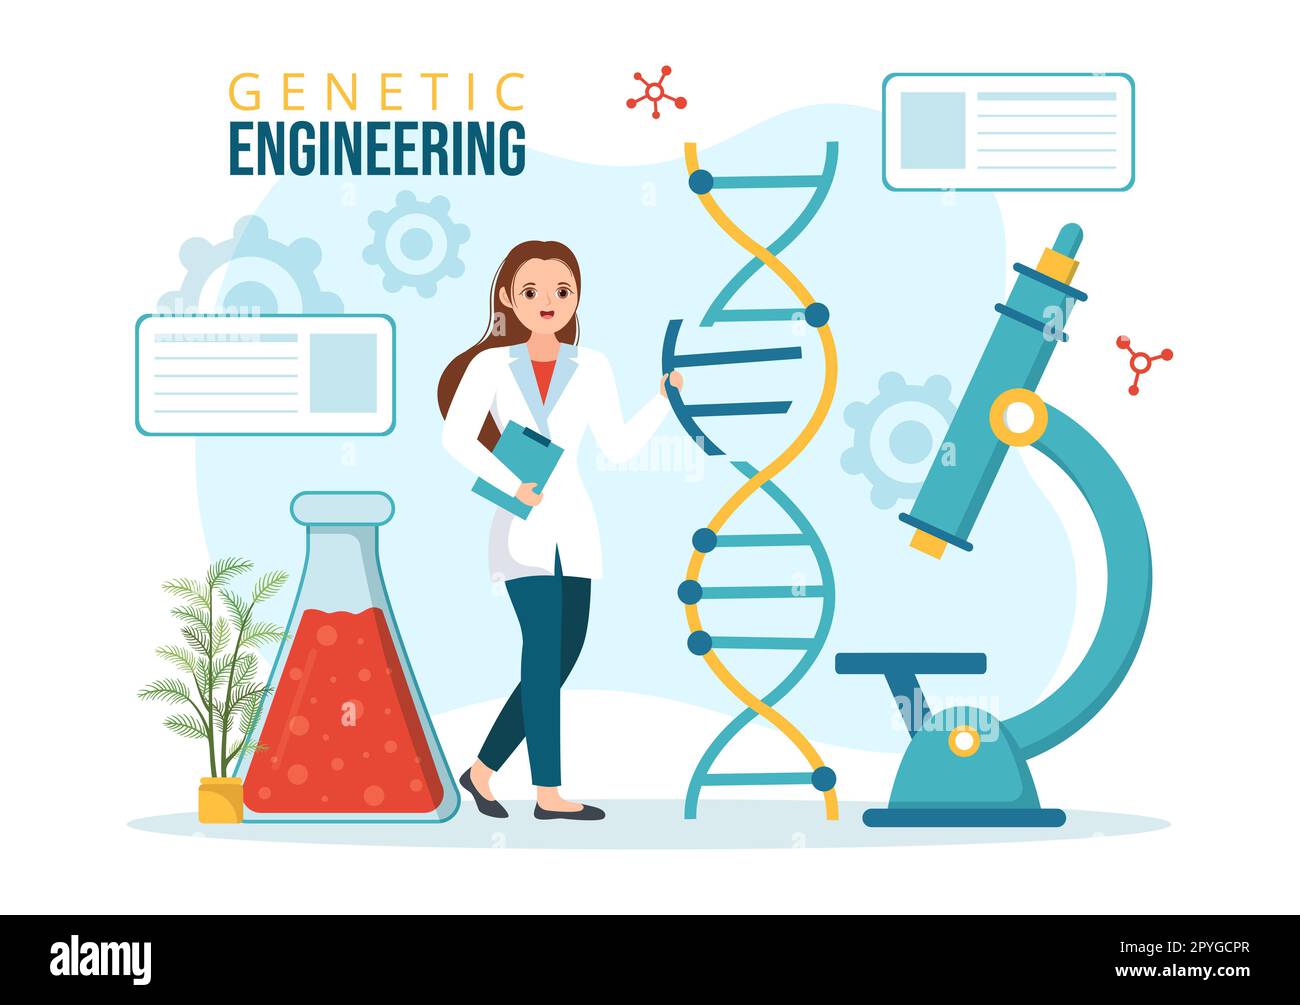 Gentechnik und DNA-Modifikationen Illustration mit Genetics Research oder Experimentwissenschaftlern in Flat Cartoon Hand Drawn Templates Stockfoto